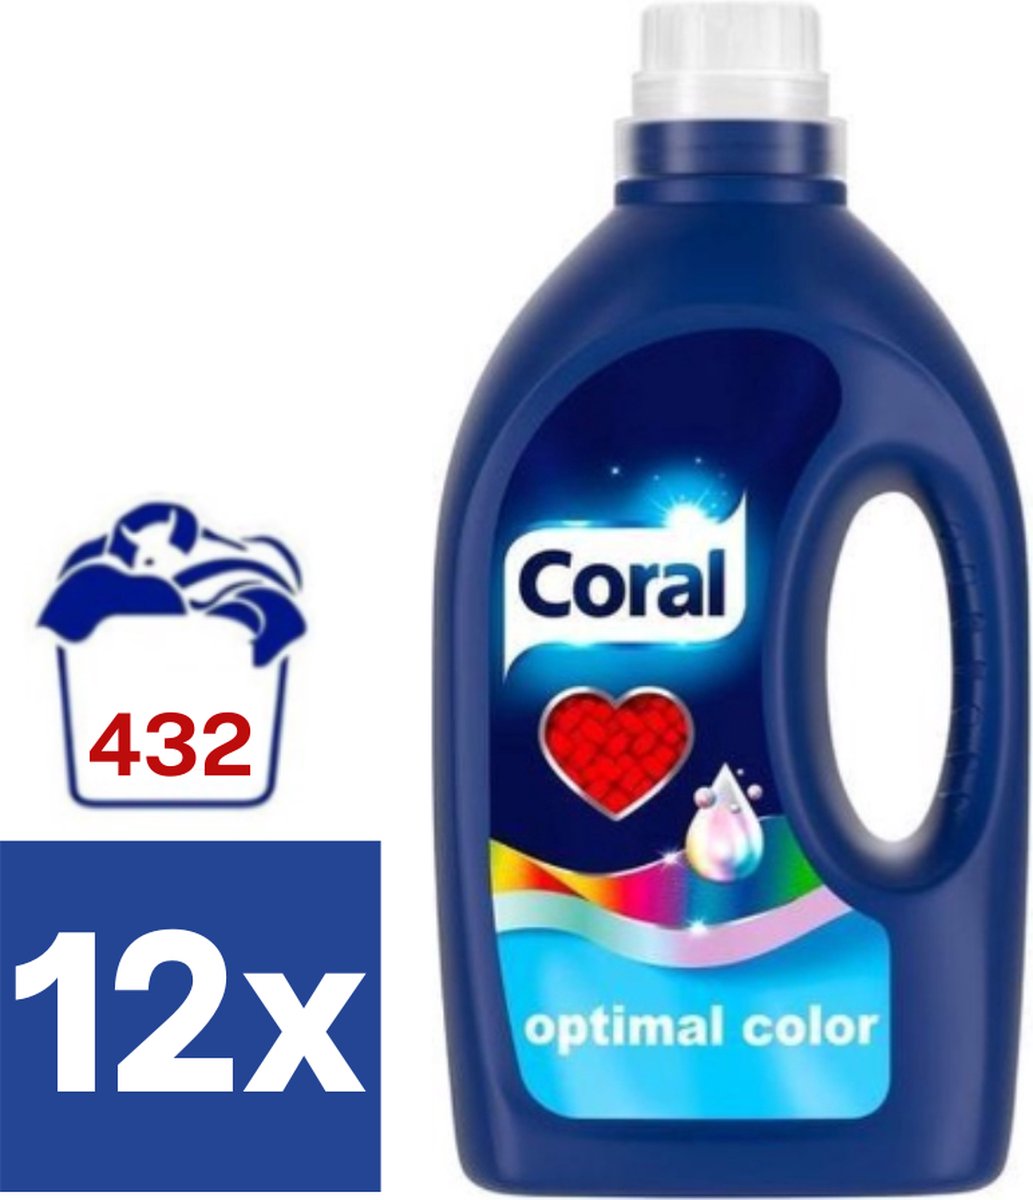 Coral Optimal Color Vloeibaar Wasmiddel (Voordeelverpakking) - 12 x 1.728 l (432 wasbeurten)